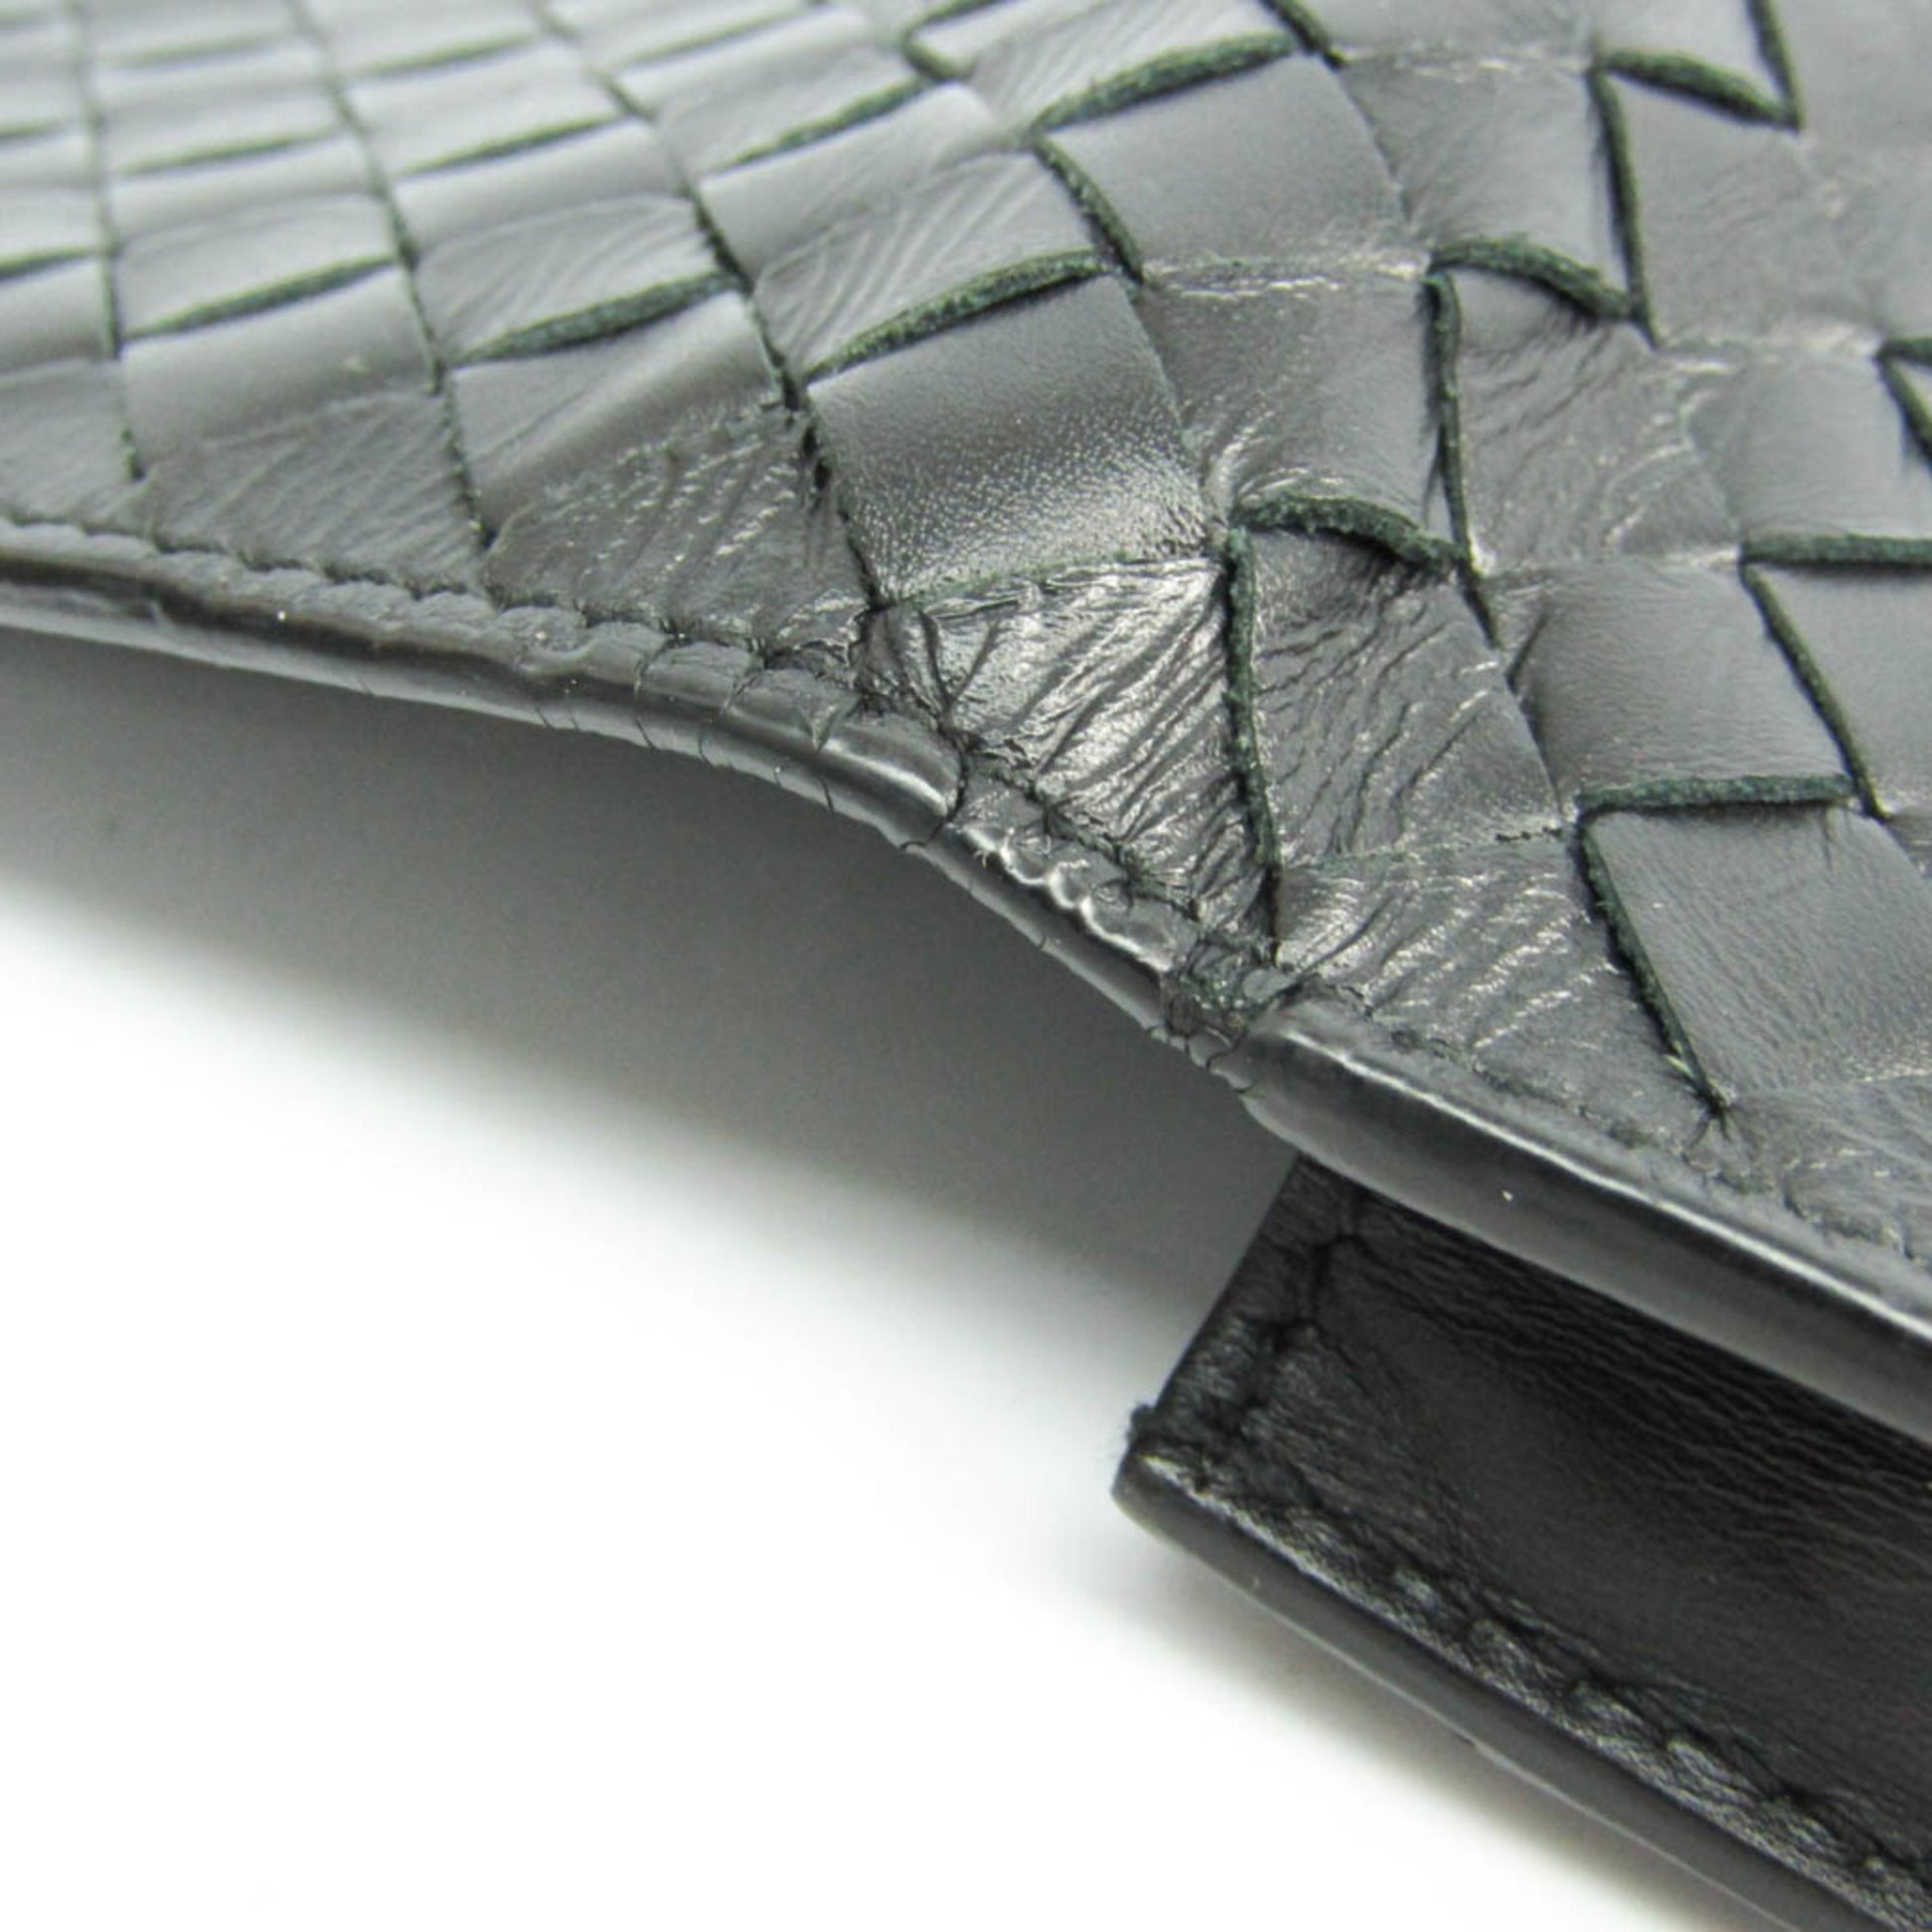 Bottega Veneta® Men's Intrecciato Bi-Fold Wallet in Black. Shop online now.